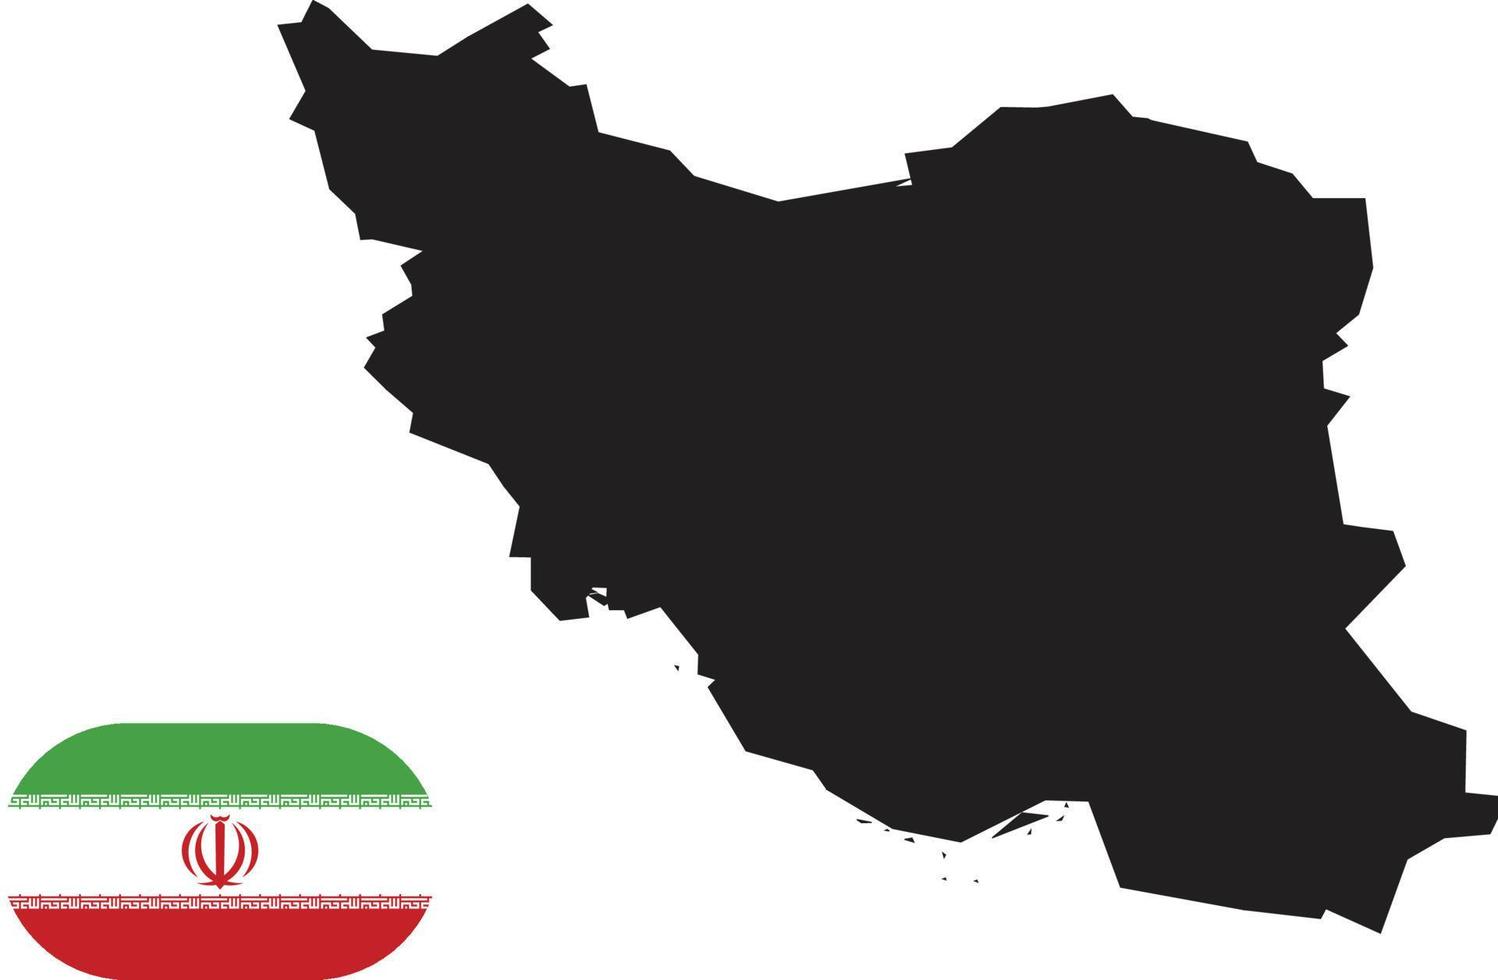 mappa e bandiera dell'Iran vettore